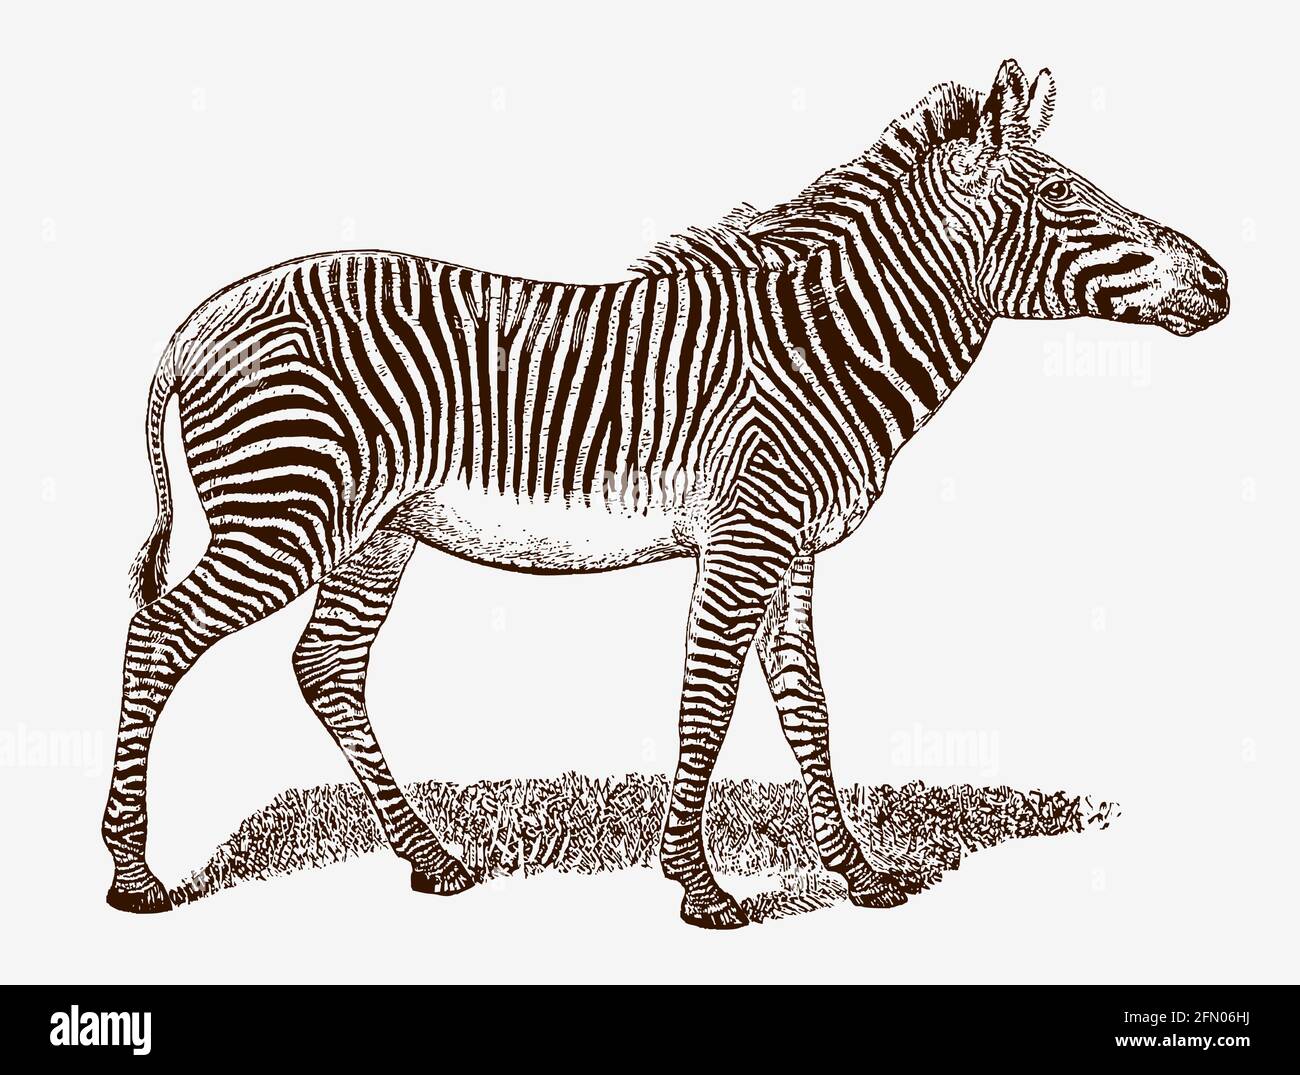 Le zèbre de l'apererd Grevy, equus grevyi en profil, après une gravure antique du XIXe siècle Illustration de Vecteur